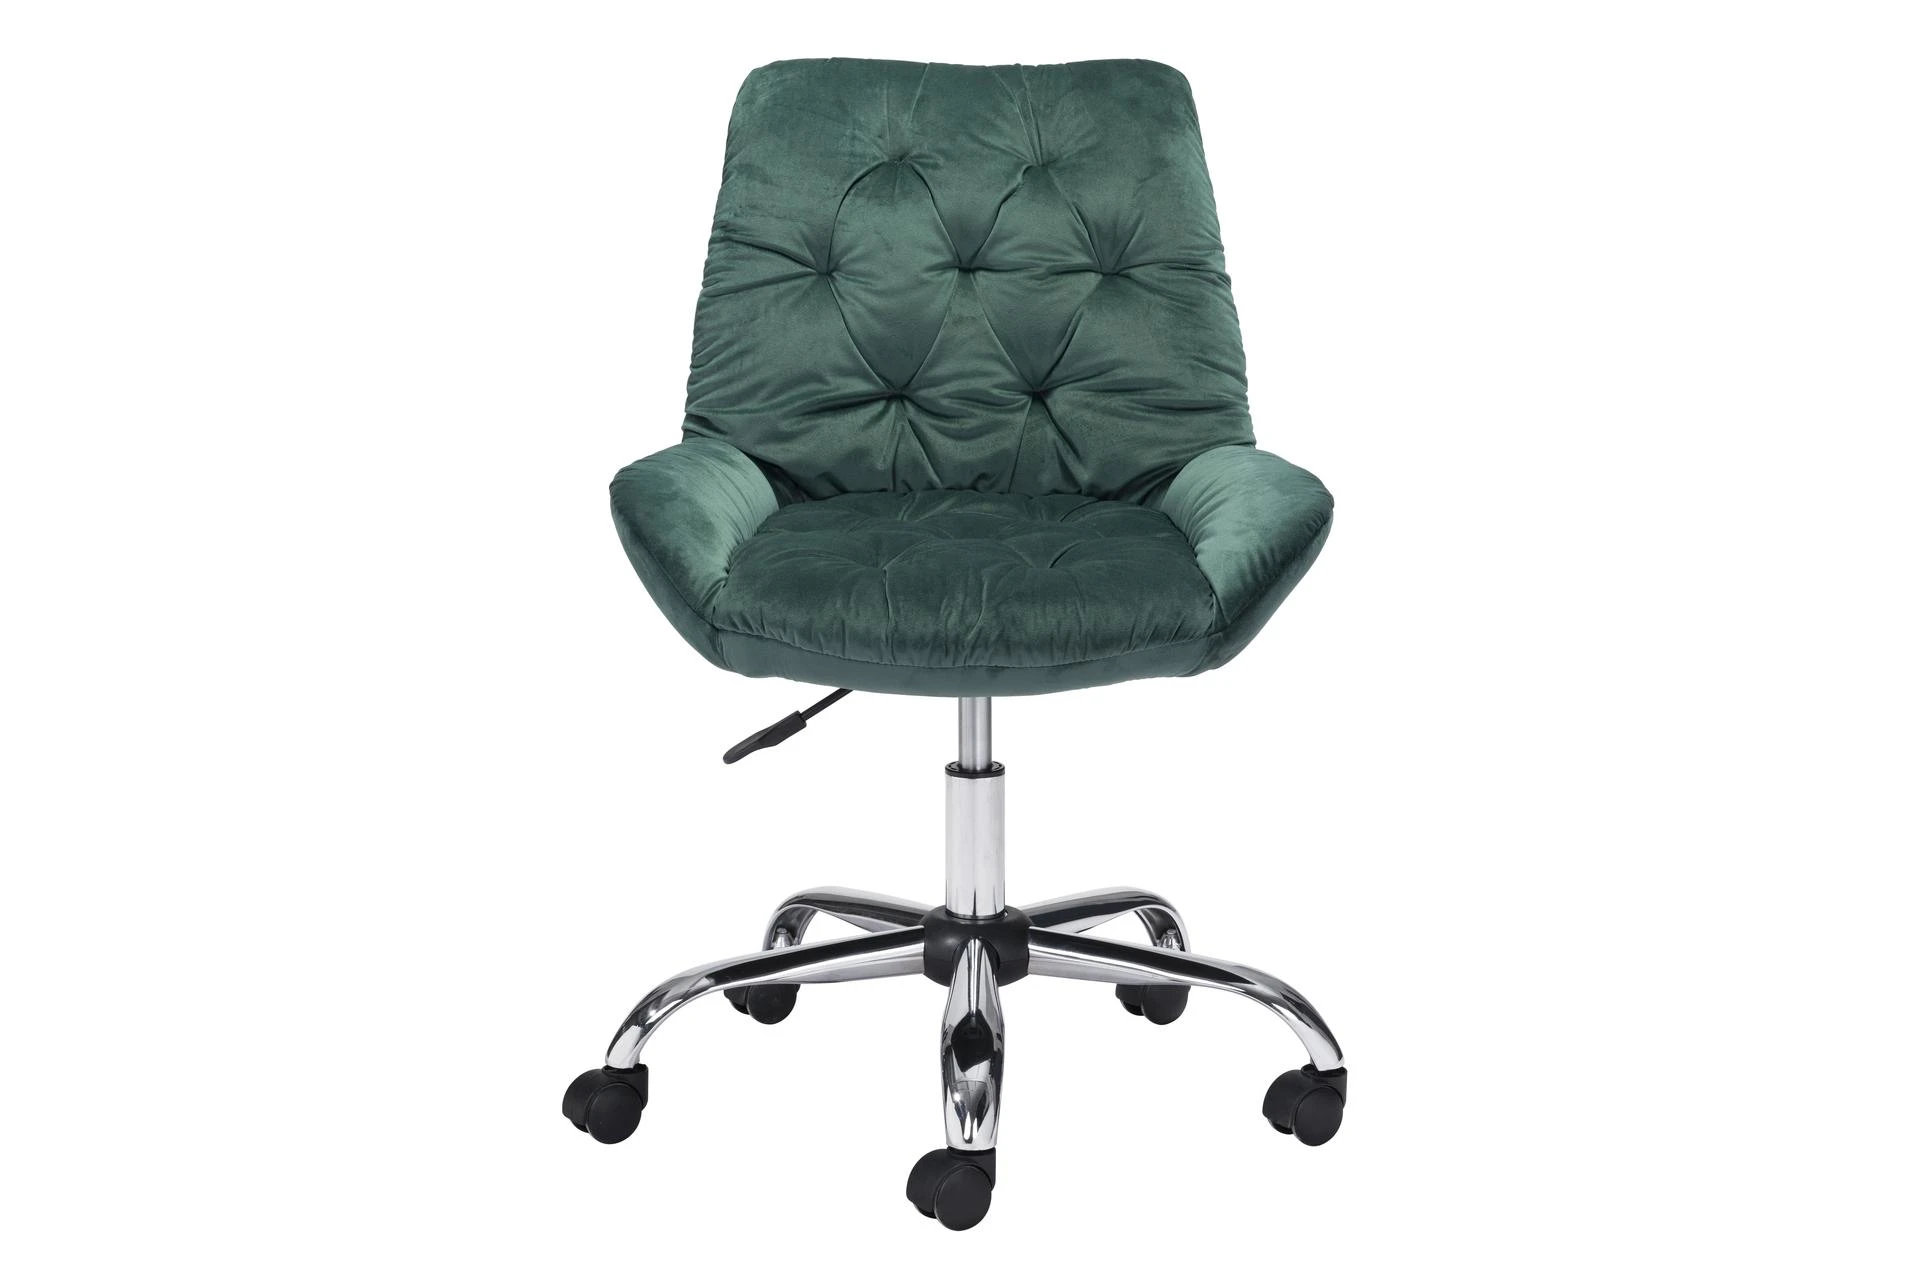 Green Velvet Tufted Rolling Office, Green Upholstered Office Chair